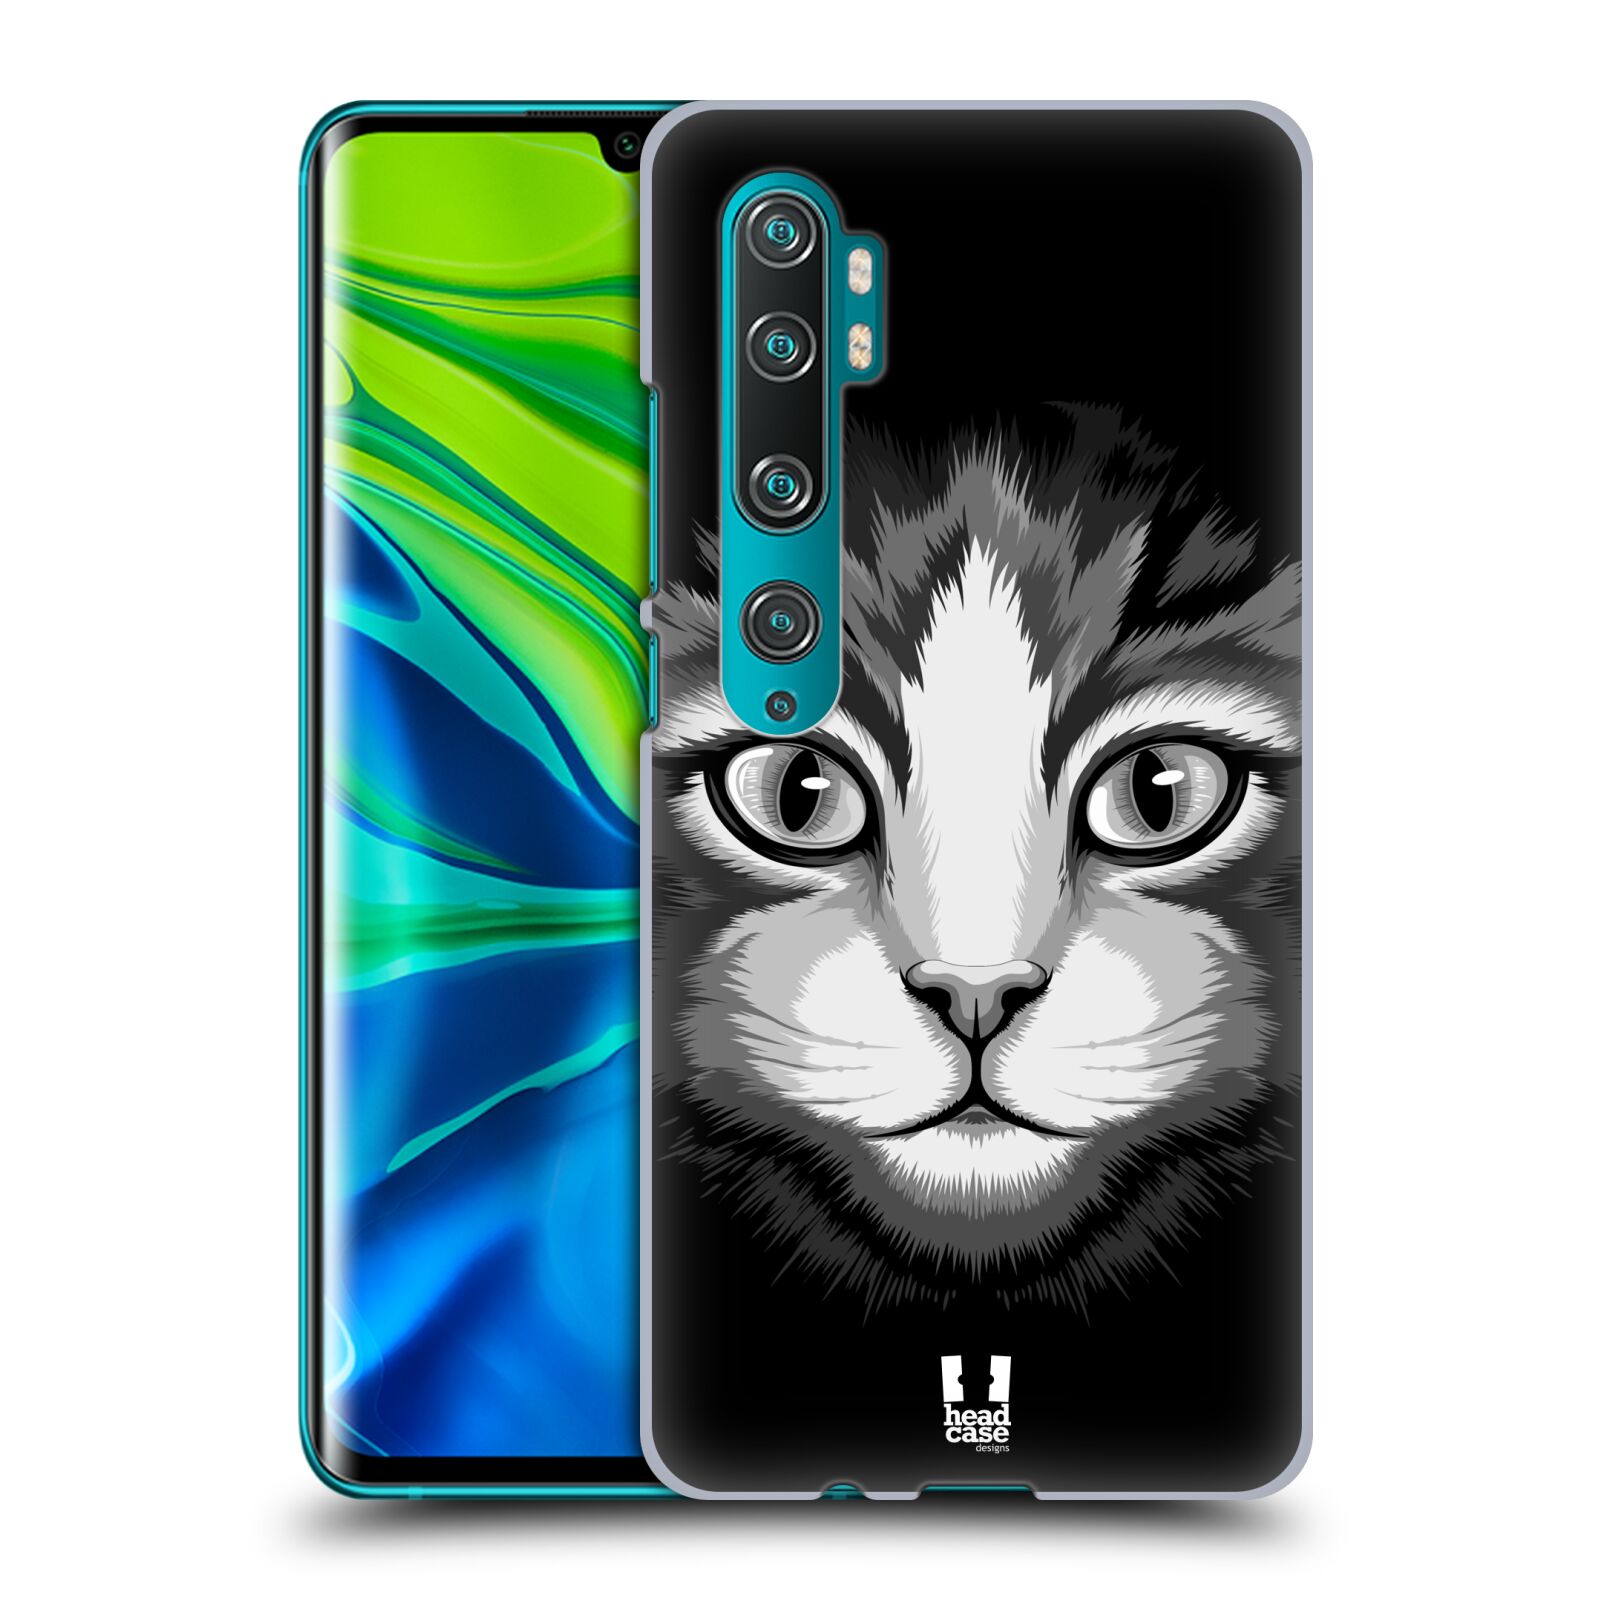 Pouzdro na mobil Xiaomi Mi Note 10 / Mi Note 10 PRO - HEAD CASE - vzor Zvíře kreslená tvář 2 kočička